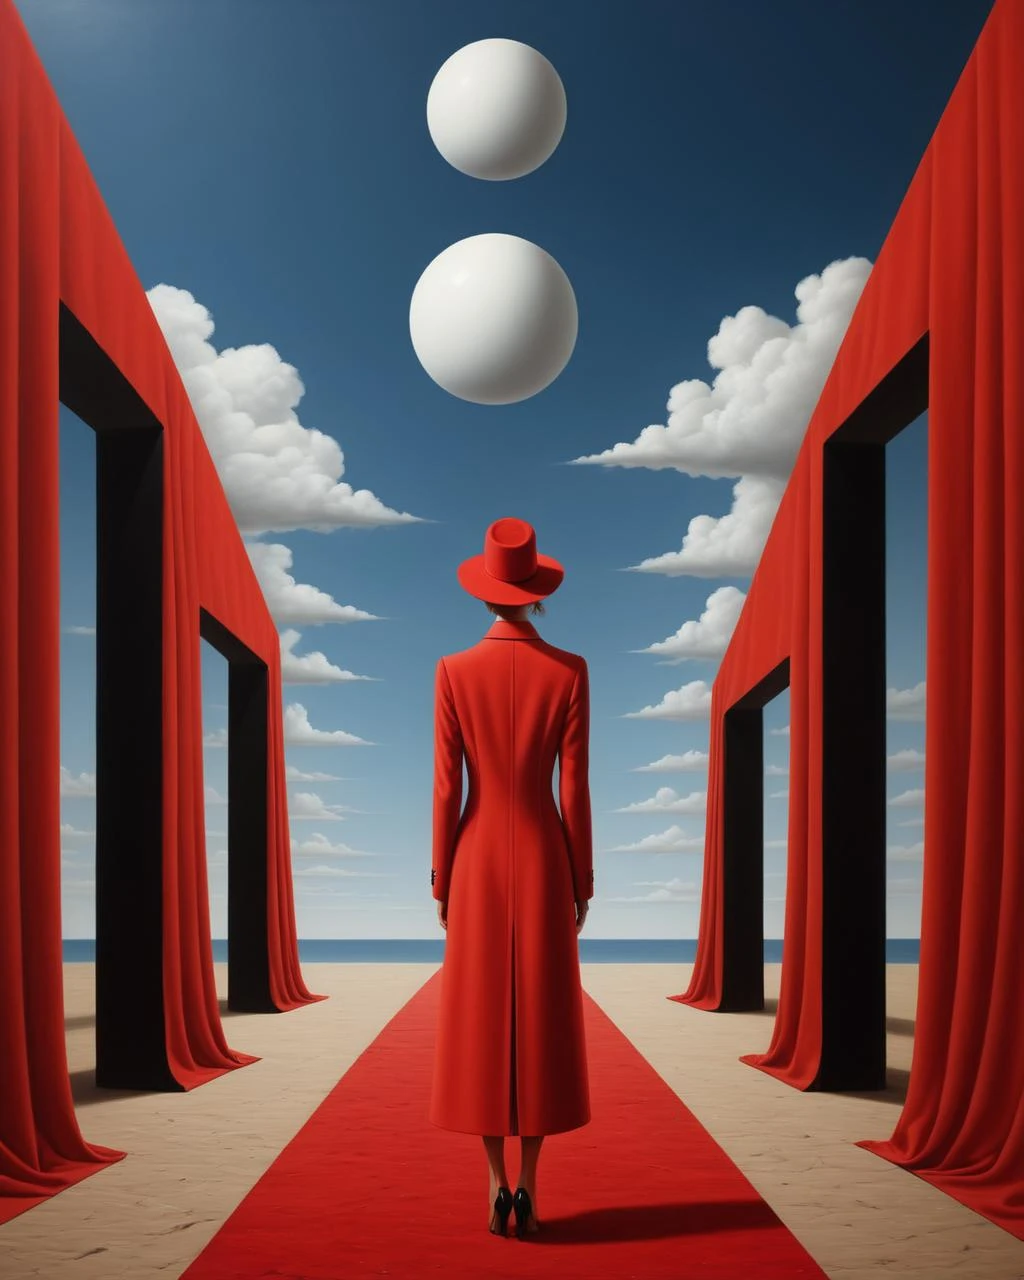 拉法爾·奧爾賓斯基風格的超現實主義藝術,拉法尔·奥尔宾斯基风格,拉法尔·奥尔宾斯基艺术,拉法爾·奧爾賓斯基亞 (rafal olbinskia) 紅毯上的紅色外套, 靈感來自拉法爾·奧爾賓斯基, 超現實主義插畫, 超現實場景, 亞歷克斯·安德烈夫, 超現實的氣氛, 梦幻般的超现实主义, 雷内·马格里特风格, 新超现实主义数字艺术, 超现实主义艺术, 情感超現實主義藝術, 超現實主義背景, epic 神秘 surrealism, 作者：克日什托夫·博古謝夫斯基 . 如梦如幻, 神秘, 挑釁, 象征性, 錯綜複雜, 詳細的